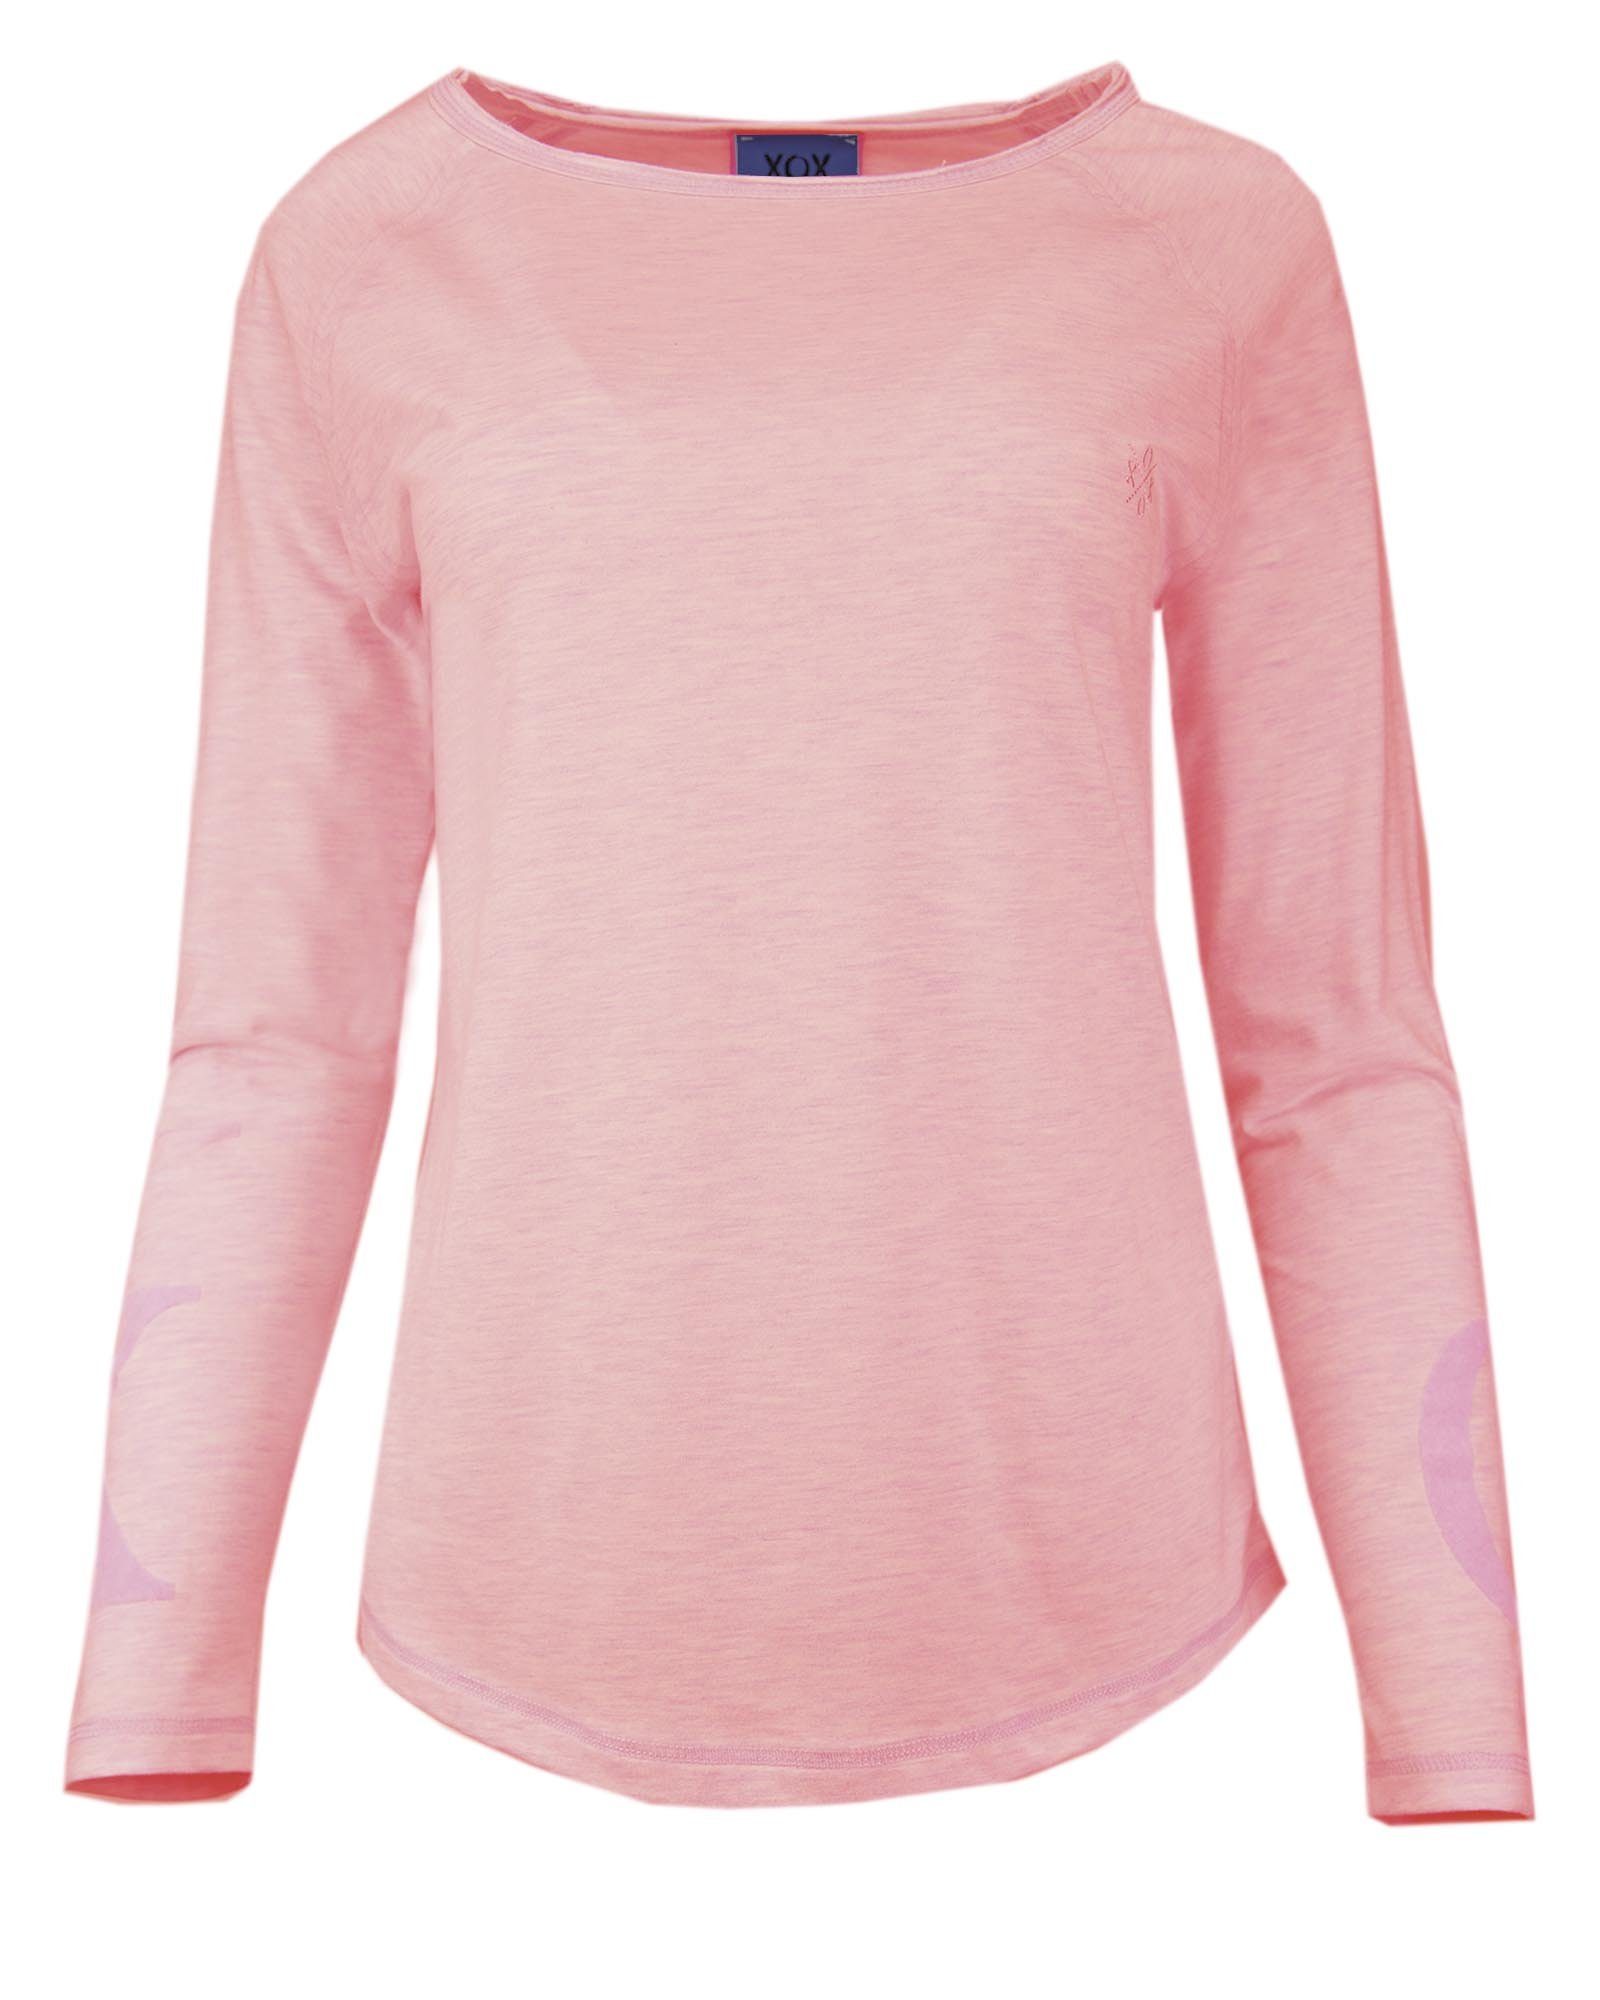 Oberteil, rosé XOX Shirt Hoodie Rundhals - Longsleeve, Fair Shirt, Ausschnitt, Damenmode Trade, XOX